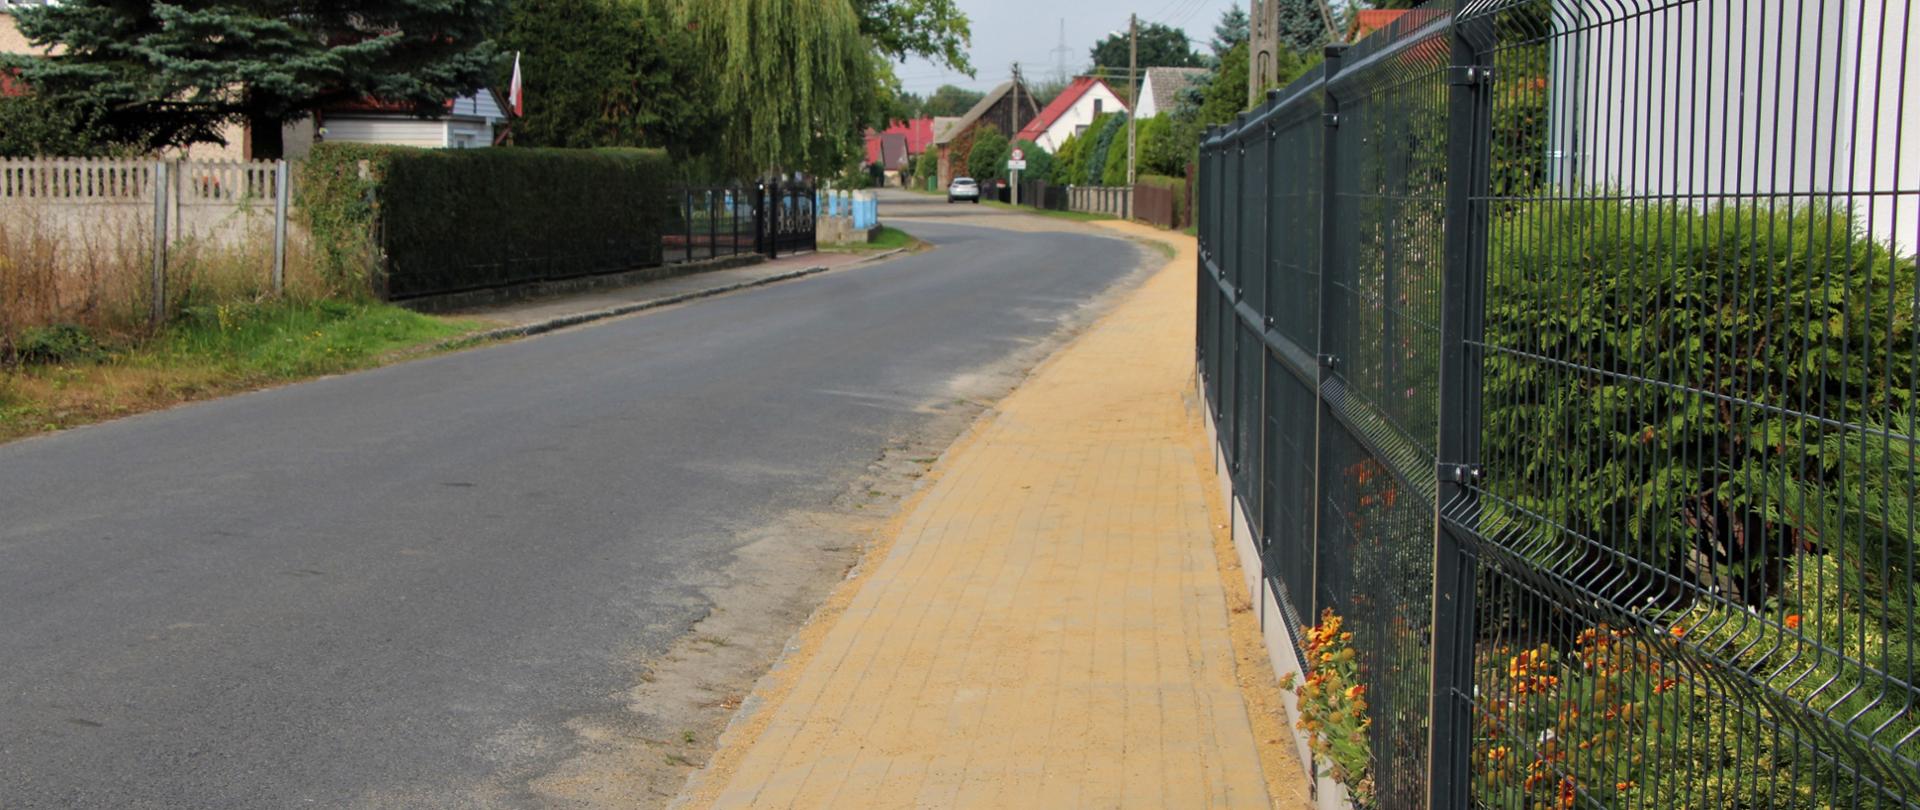 Droga asfaltowa i ścieżka z betonowej kostki, ogrodzenia oraz zabudowania we wsi. 